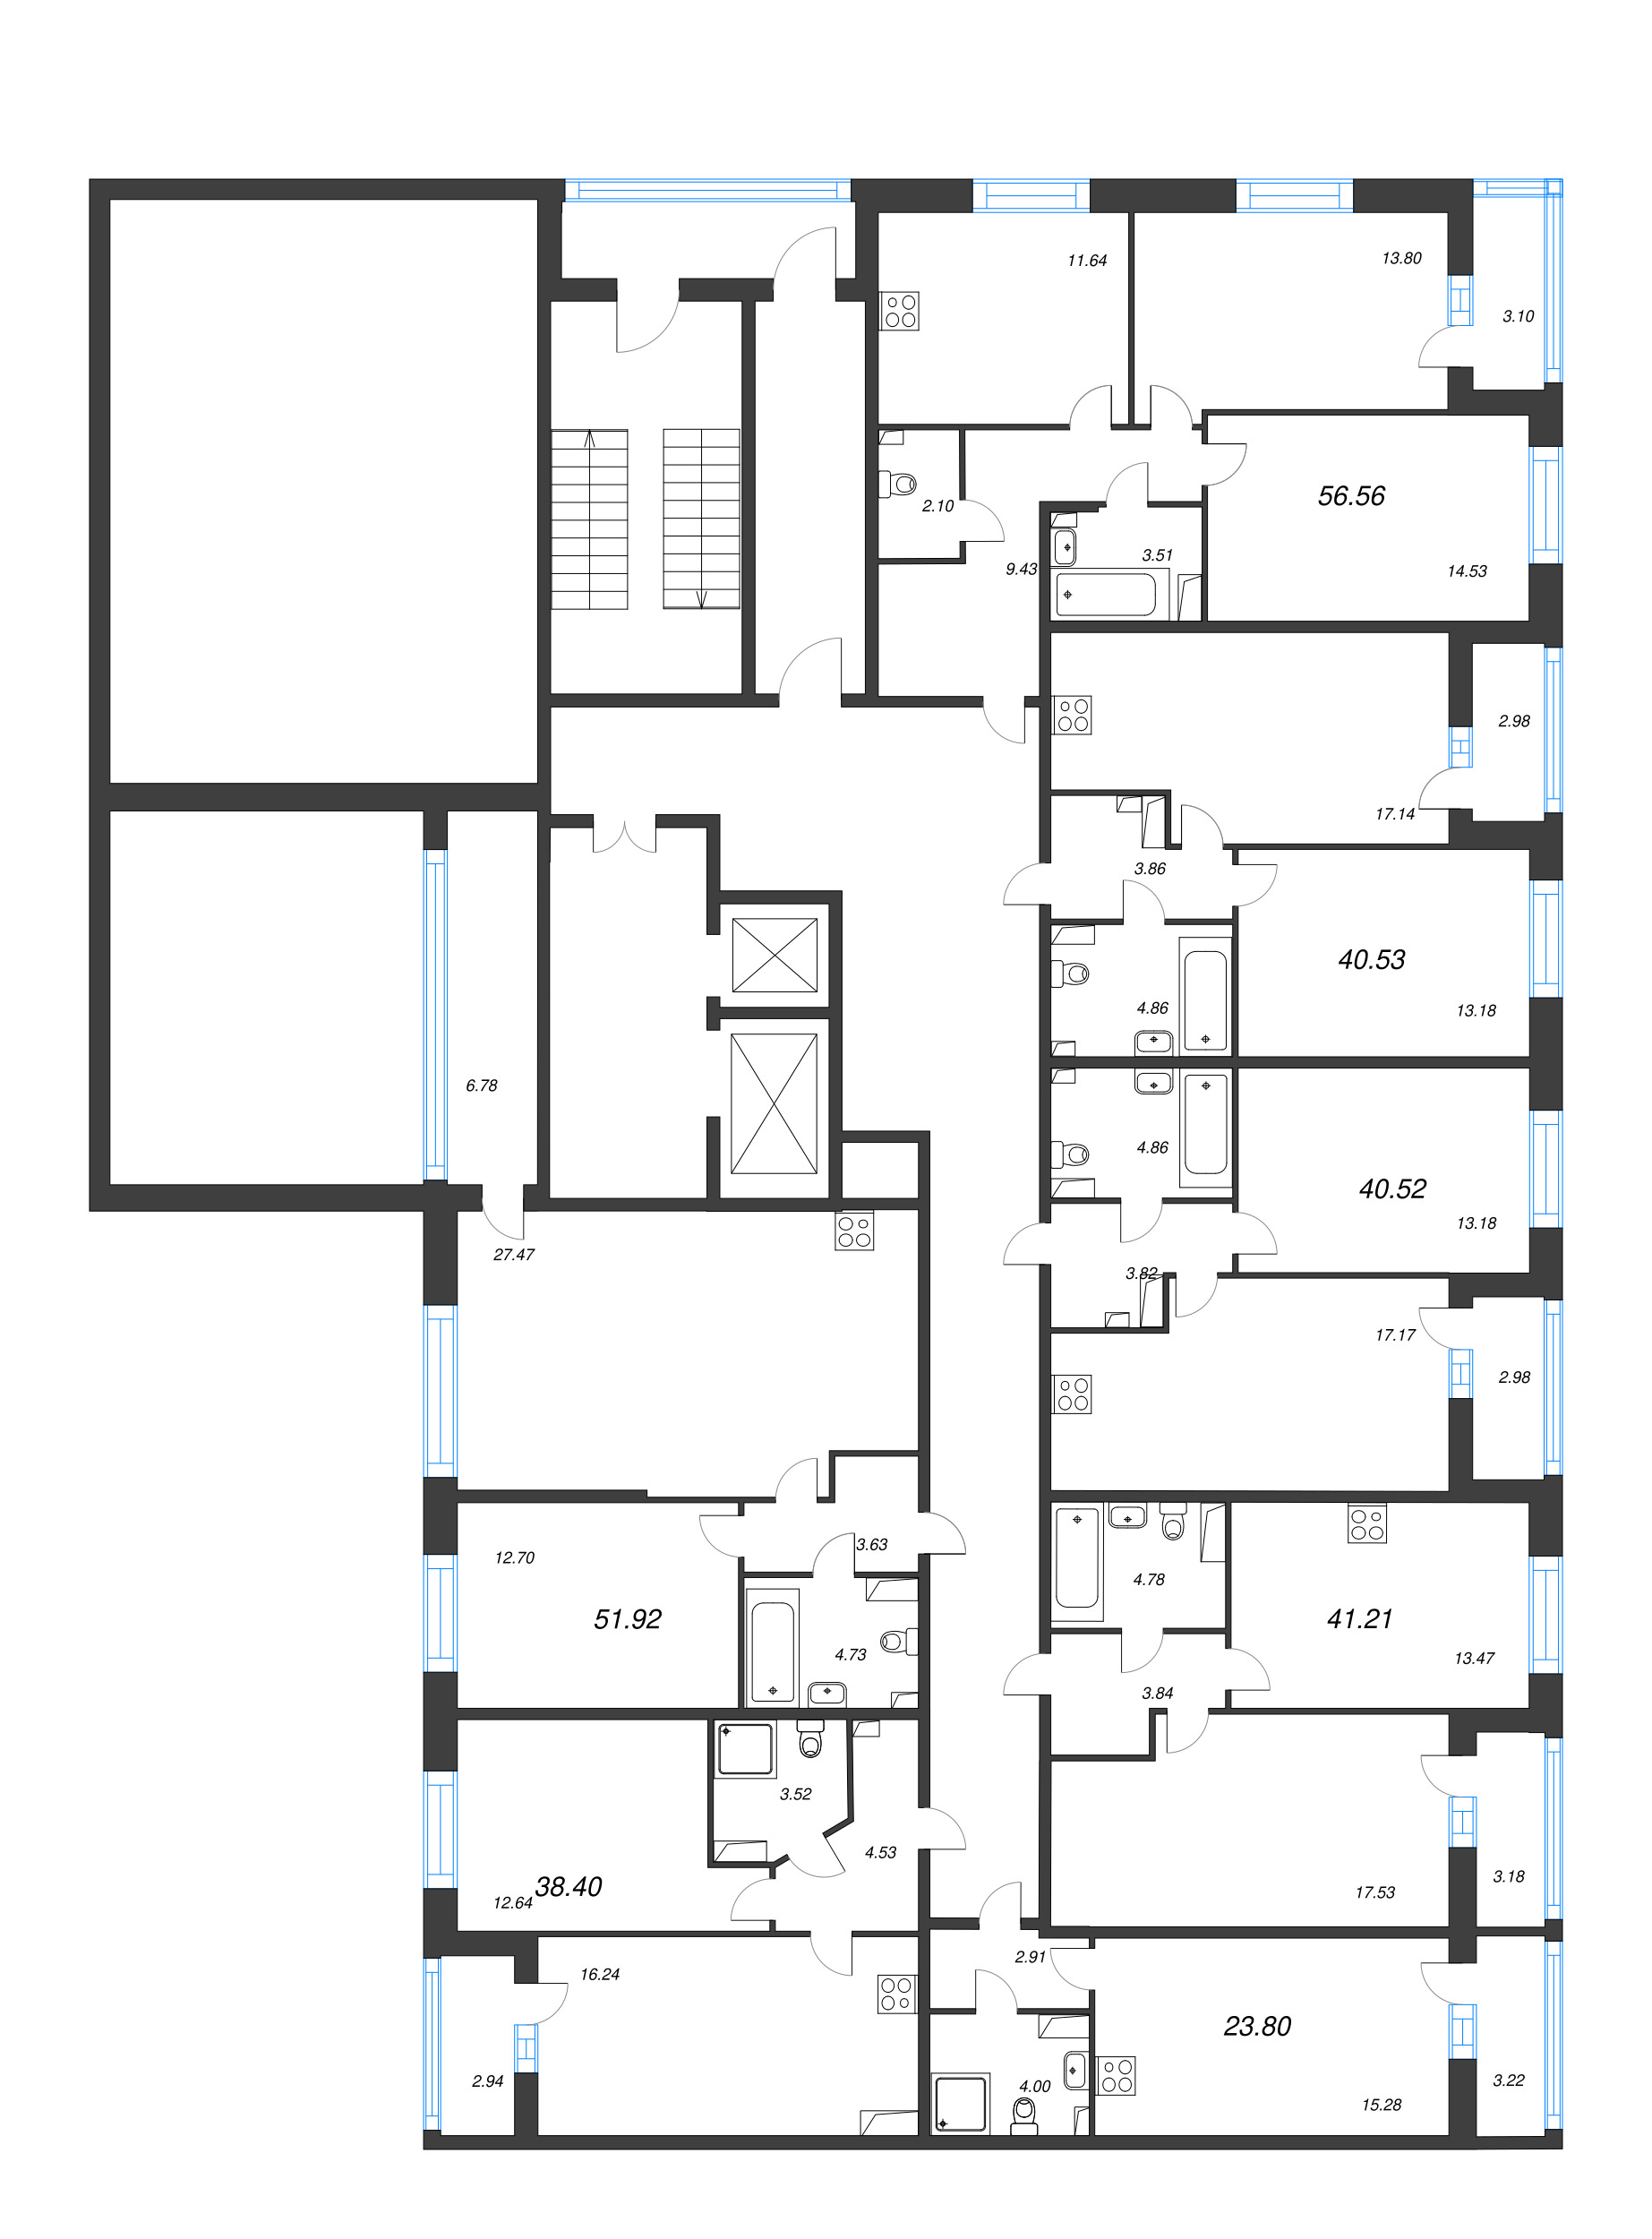 2-комнатная квартира, 56.56 м² в ЖК "Аквилон Leaves" - планировка этажа